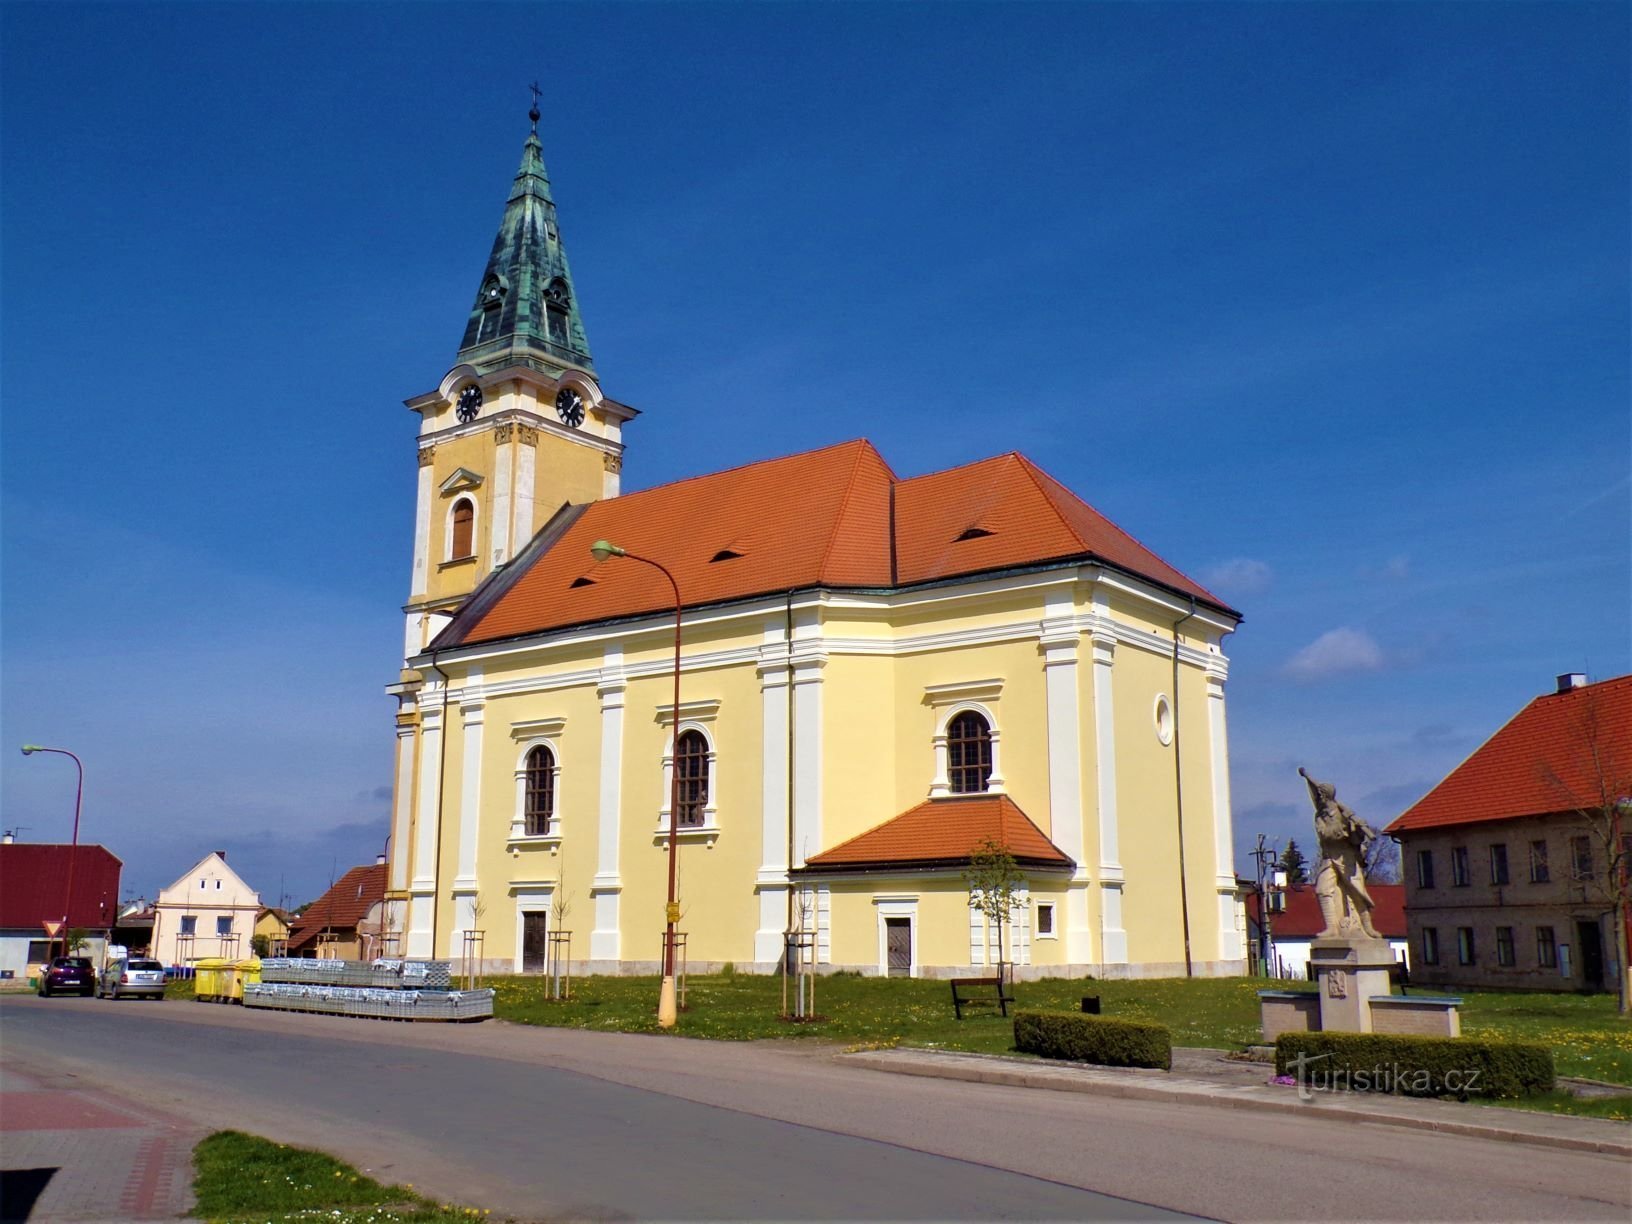 Igreja de St. Stanislav com o monumento caído (Smidary, 30.4.2021/XNUMX/XNUMX)